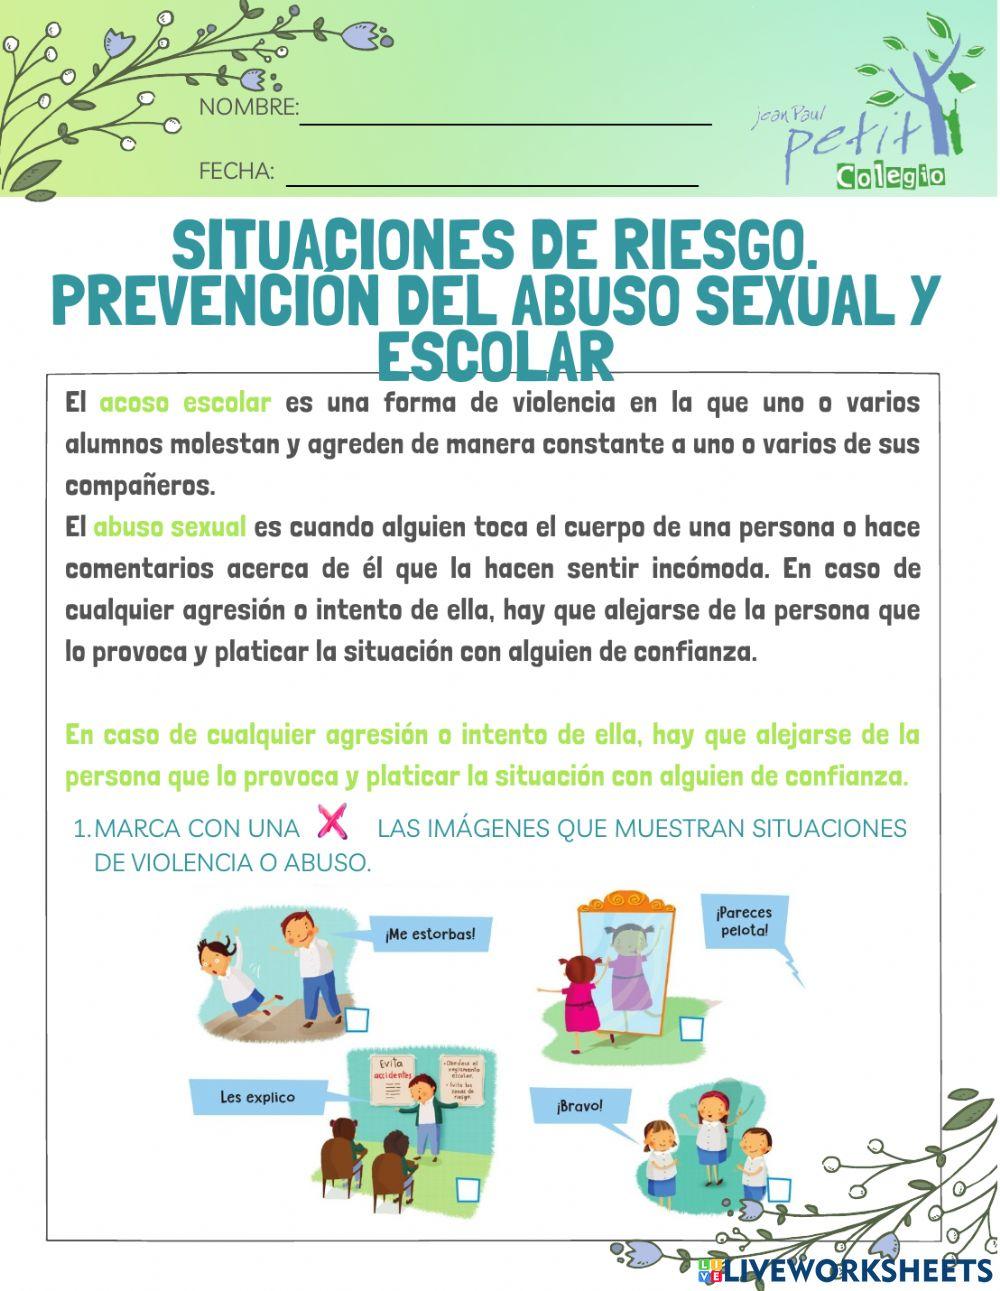 Situaciones de riesgo. Prevención del abuso sexual y escolar